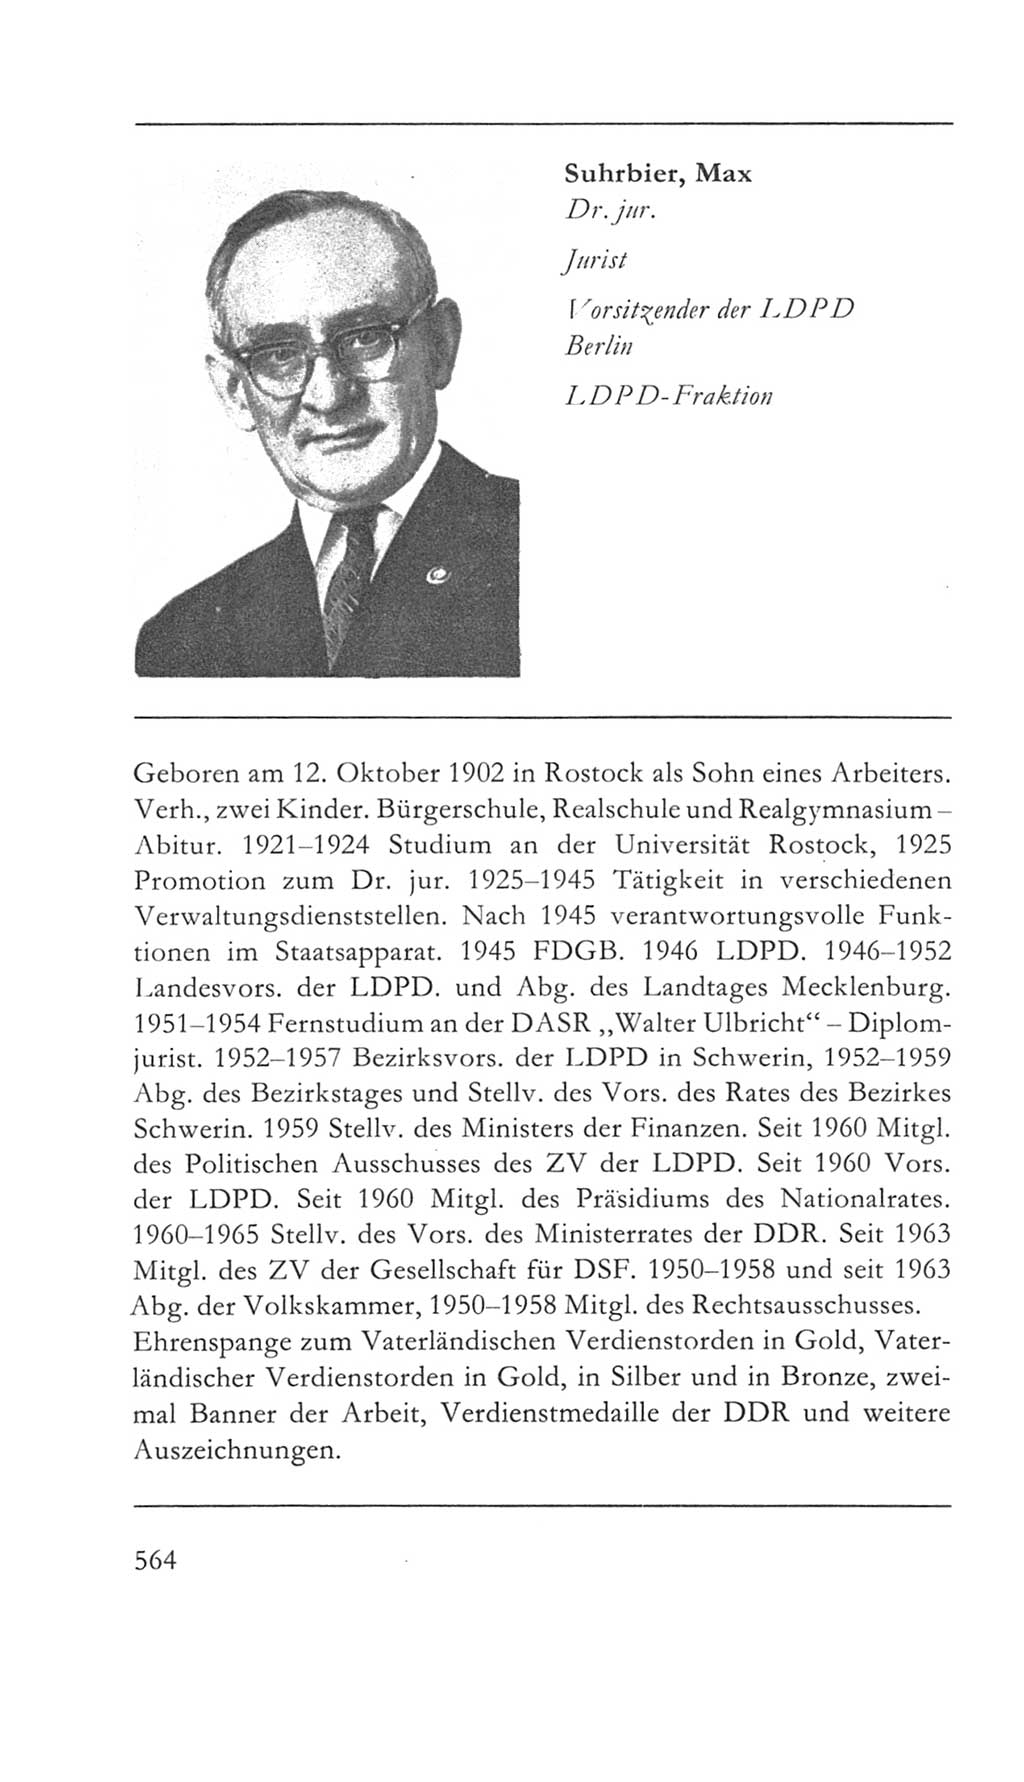 Volkskammer (VK) der Deutschen Demokratischen Republik (DDR) 5. Wahlperiode 1967-1971, Seite 564 (VK. DDR 5. WP. 1967-1971, S. 564)